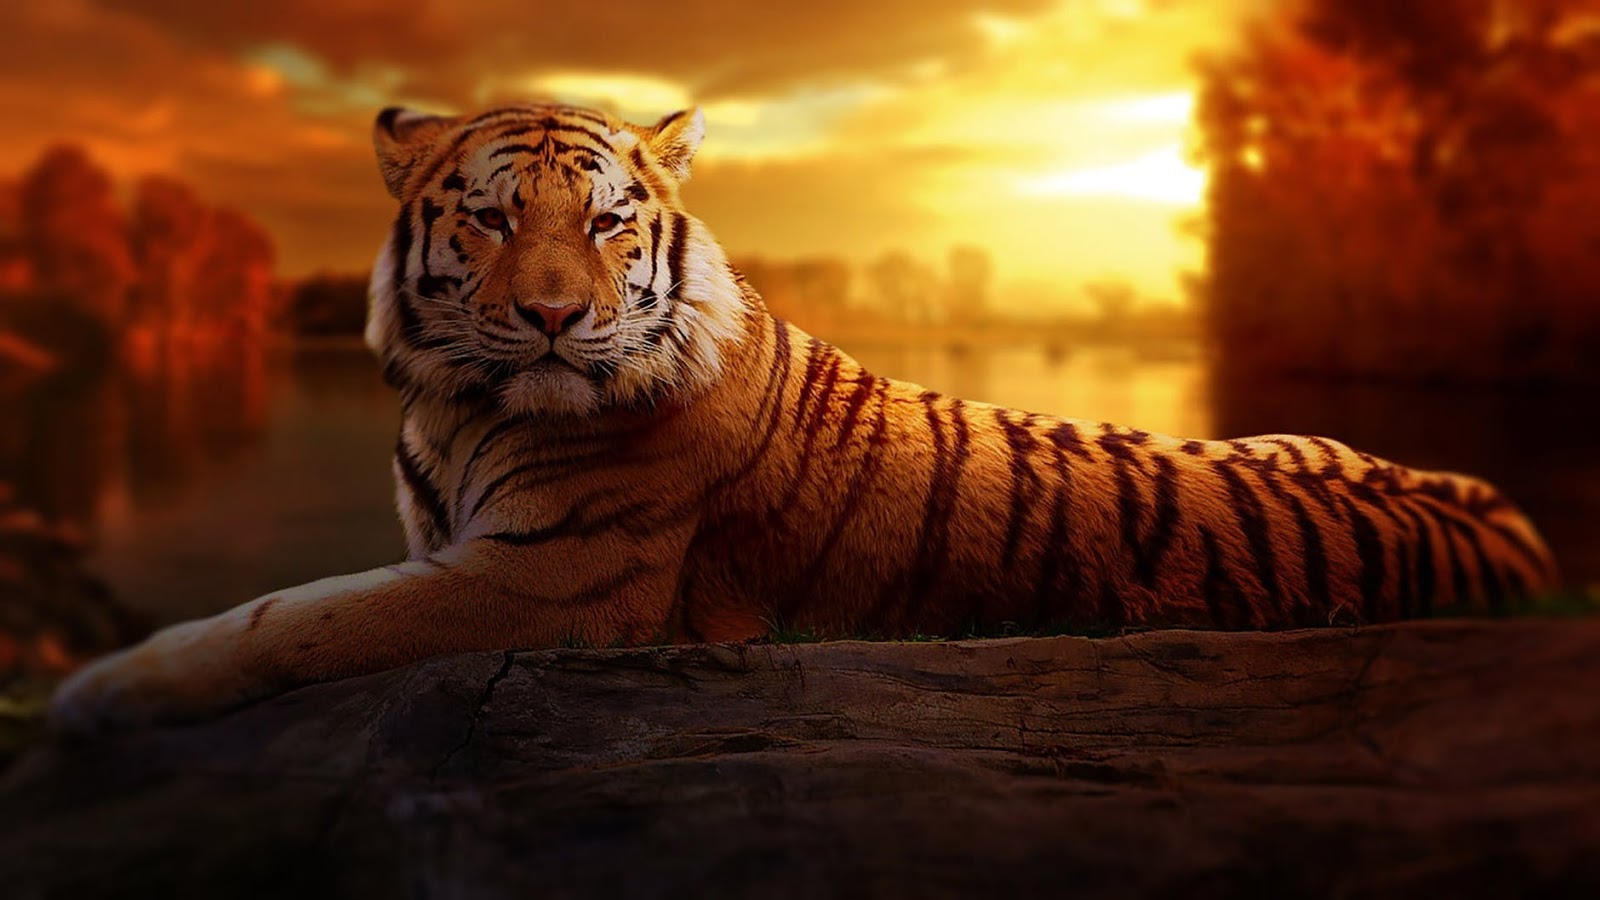 descarga gratuita de fondo de pantalla de tigre,tigre,fauna silvestre,tigre de bengala,felidae,tigre siberiano